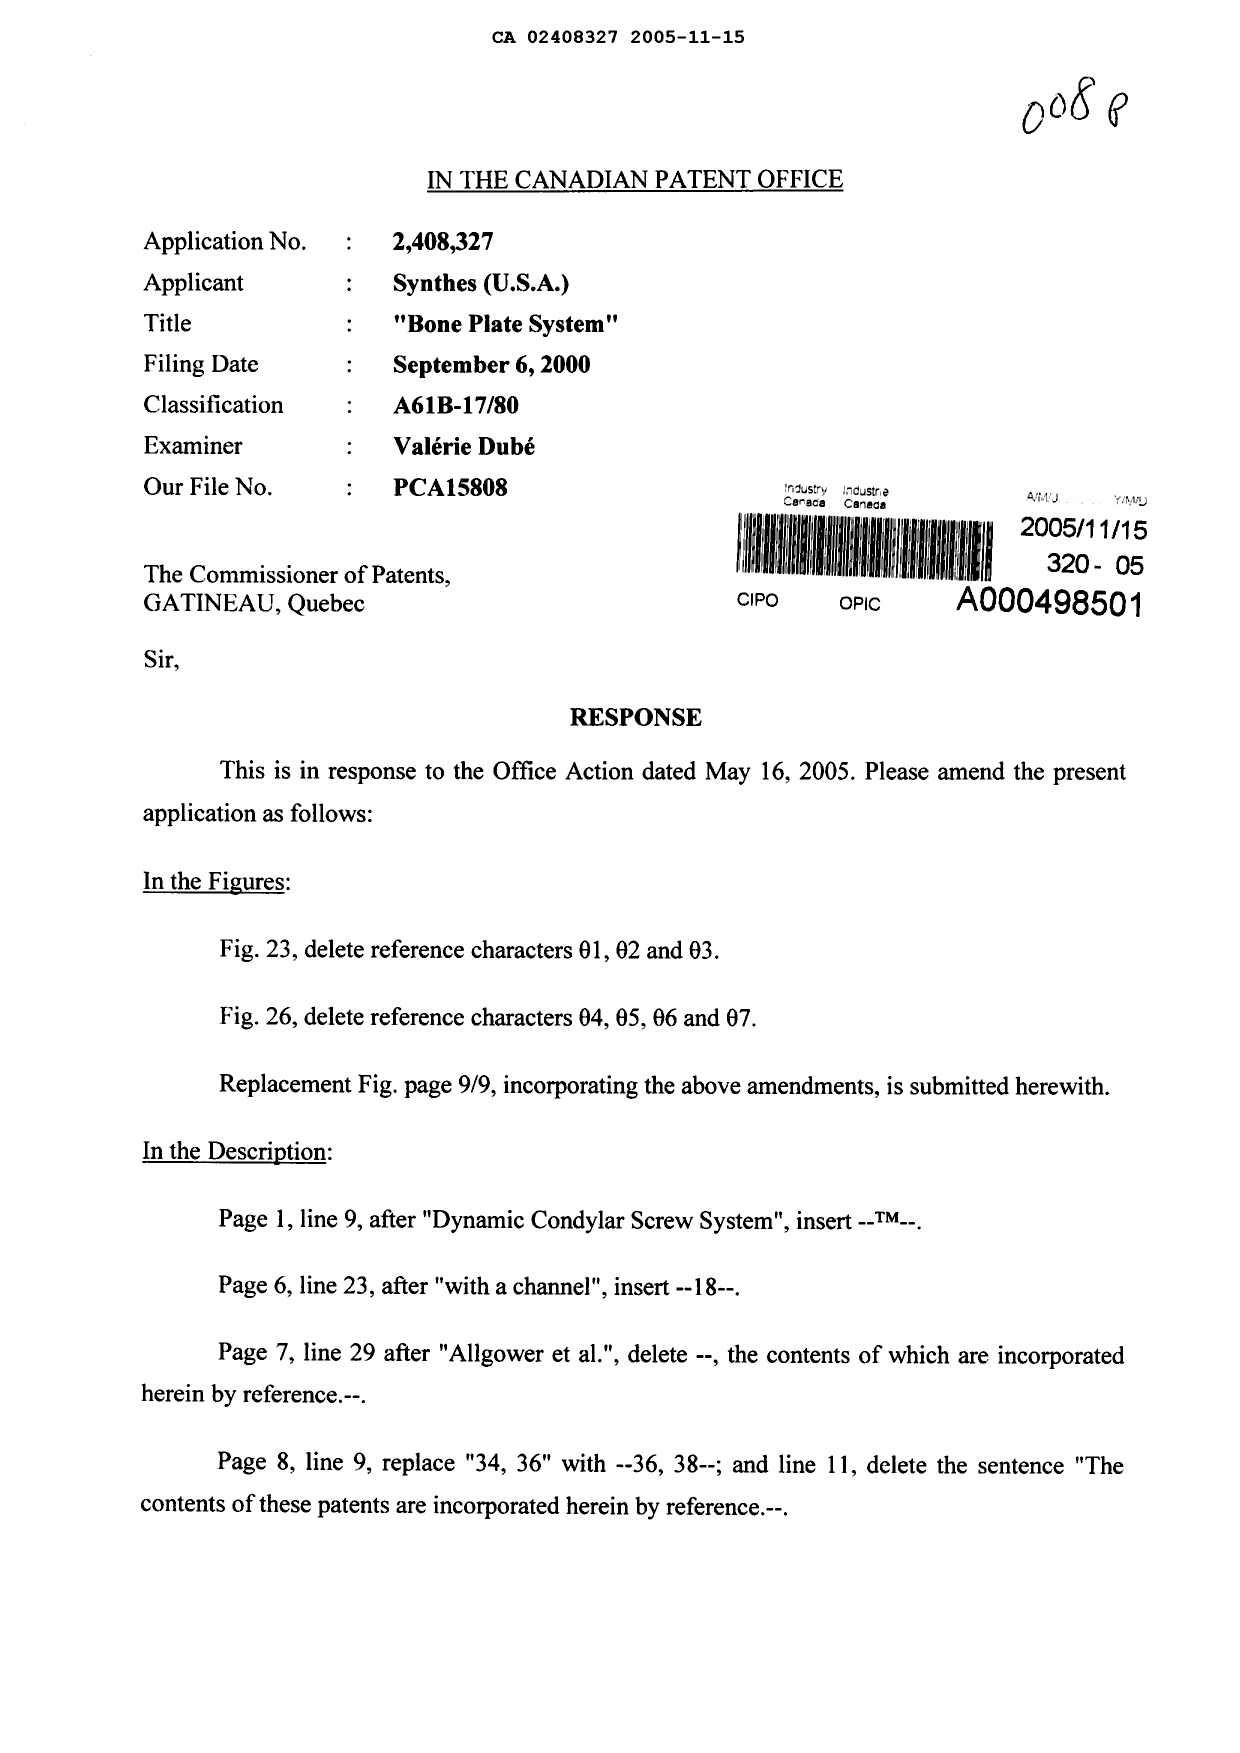 Document de brevet canadien 2408327. Poursuite-Amendment 20051115. Image 1 de 13